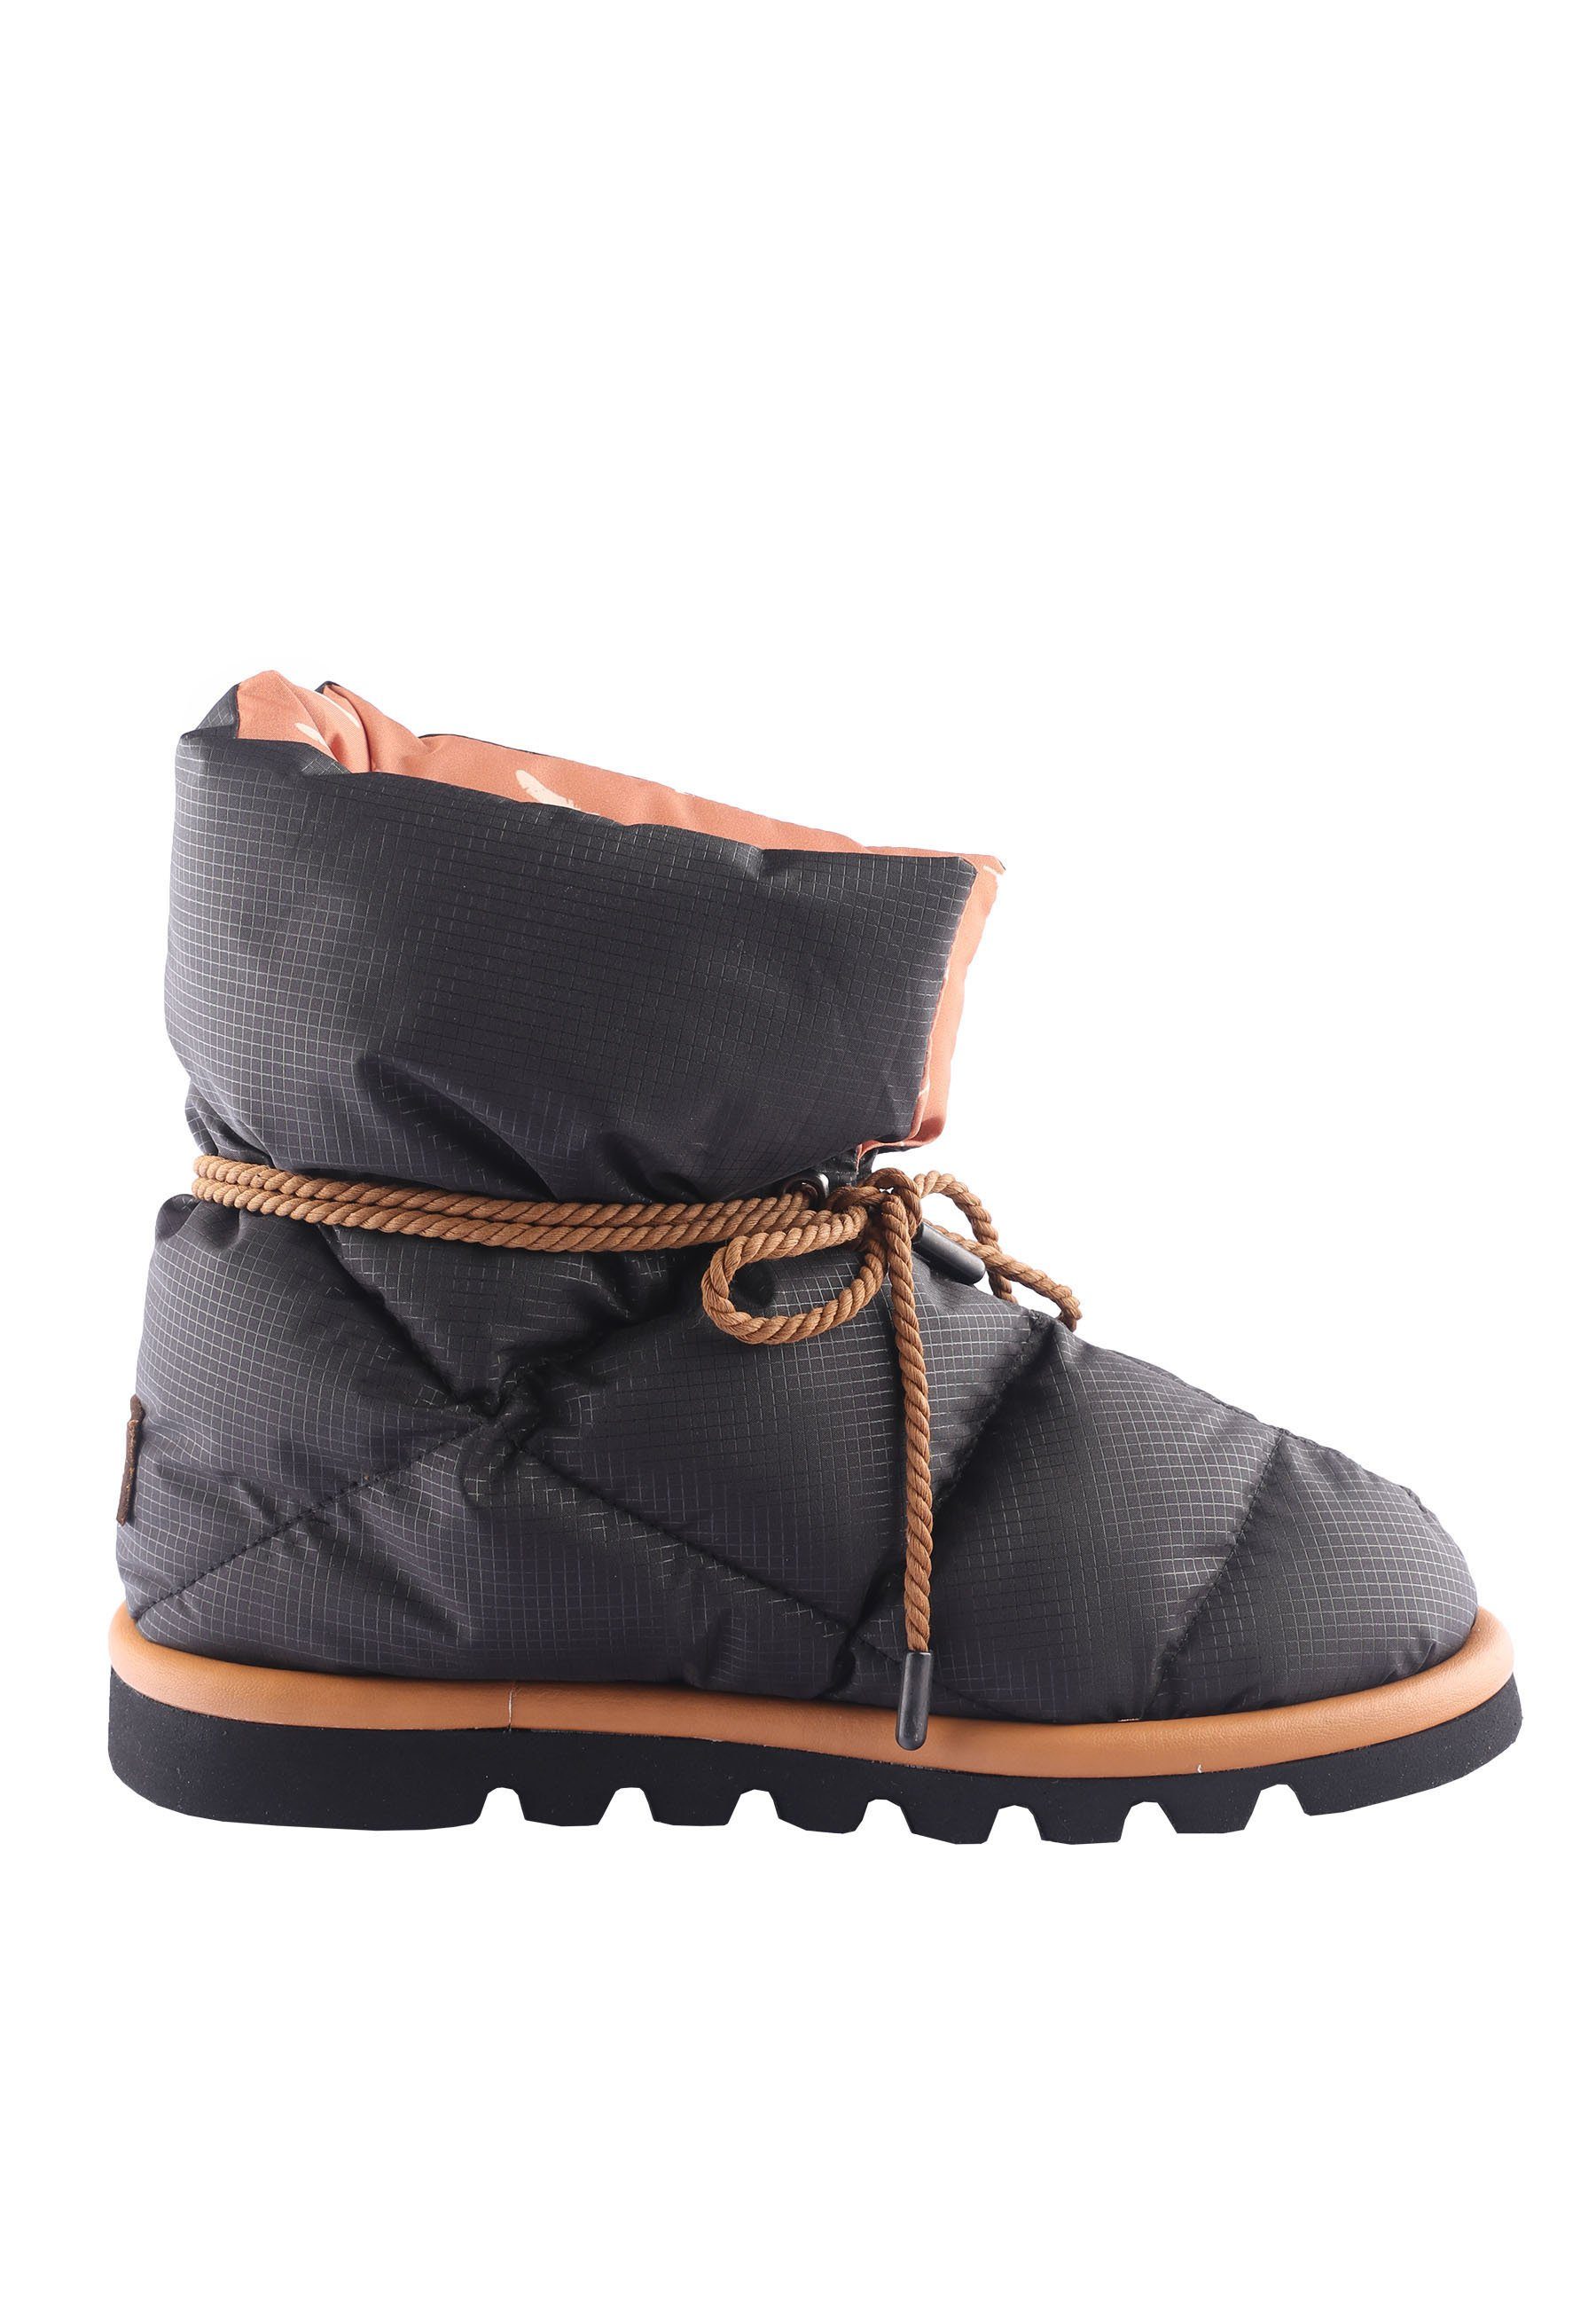 D.MoRo Shoes »Qate« Winterstiefelette online kaufen | OTTO